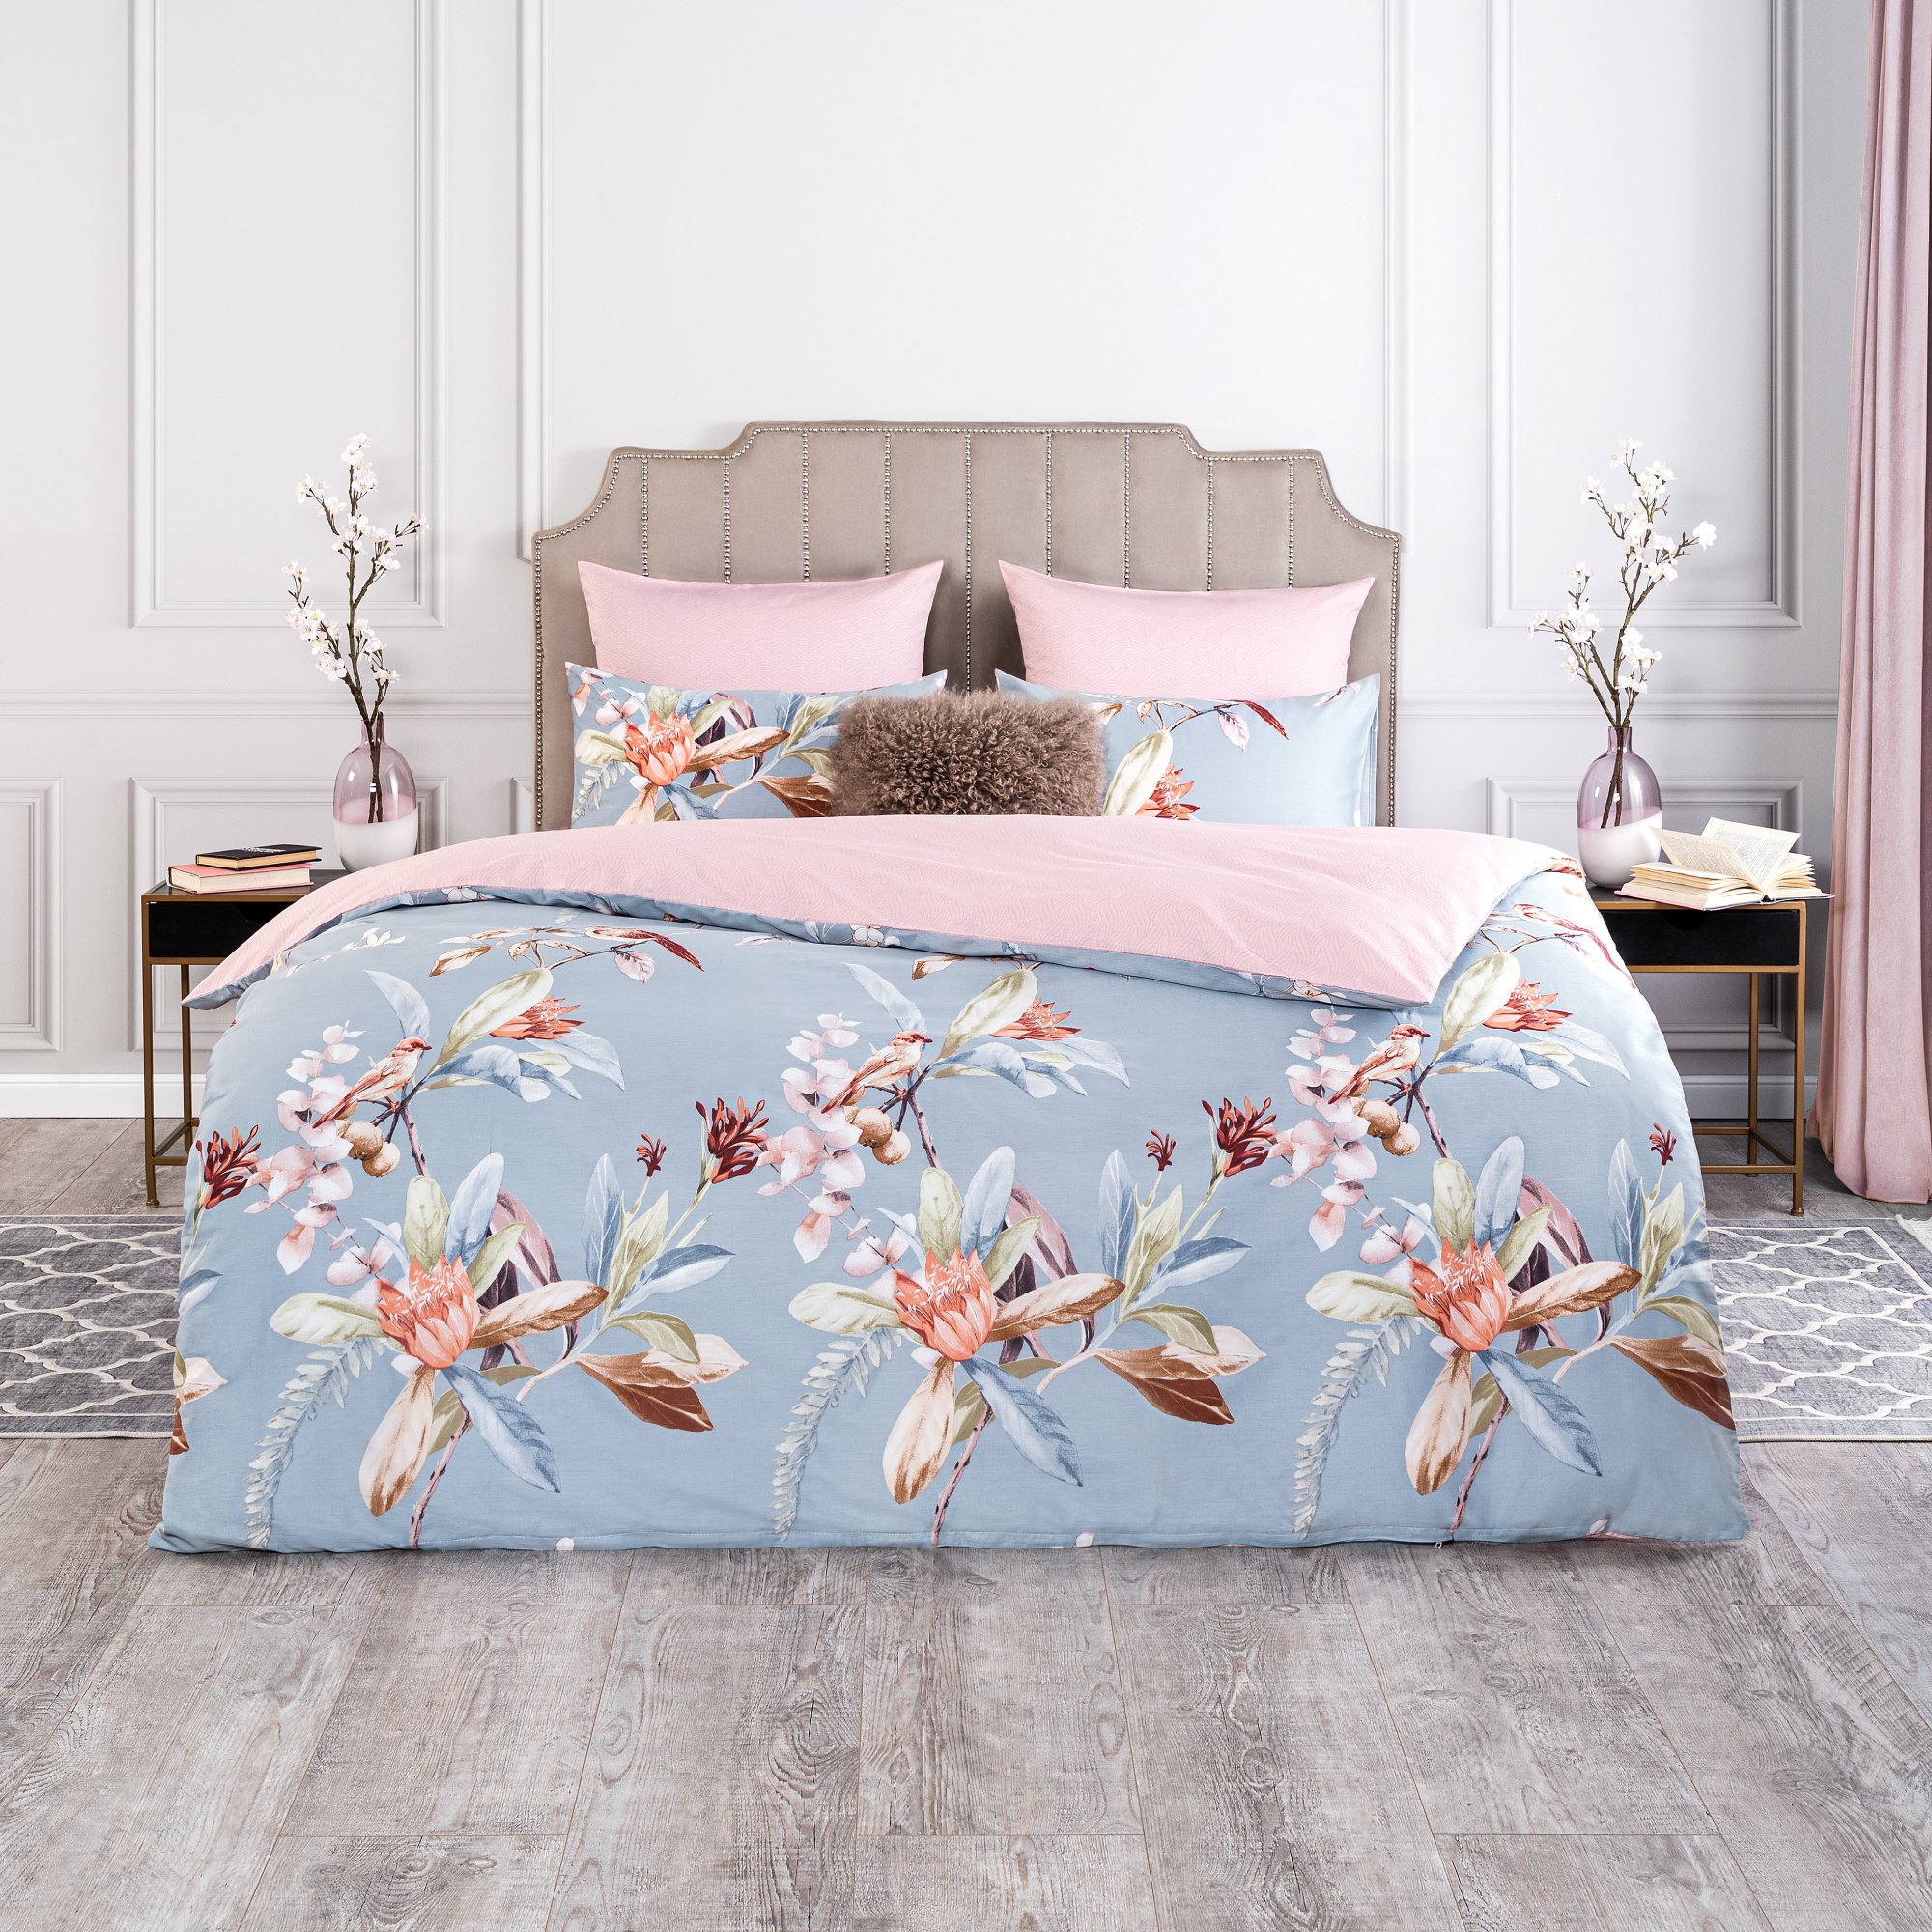 Комплект постельного белья Estia Этери голубой с розовым Семейный/дуэт комплект постельного белья bahar blossom разно ный семейный